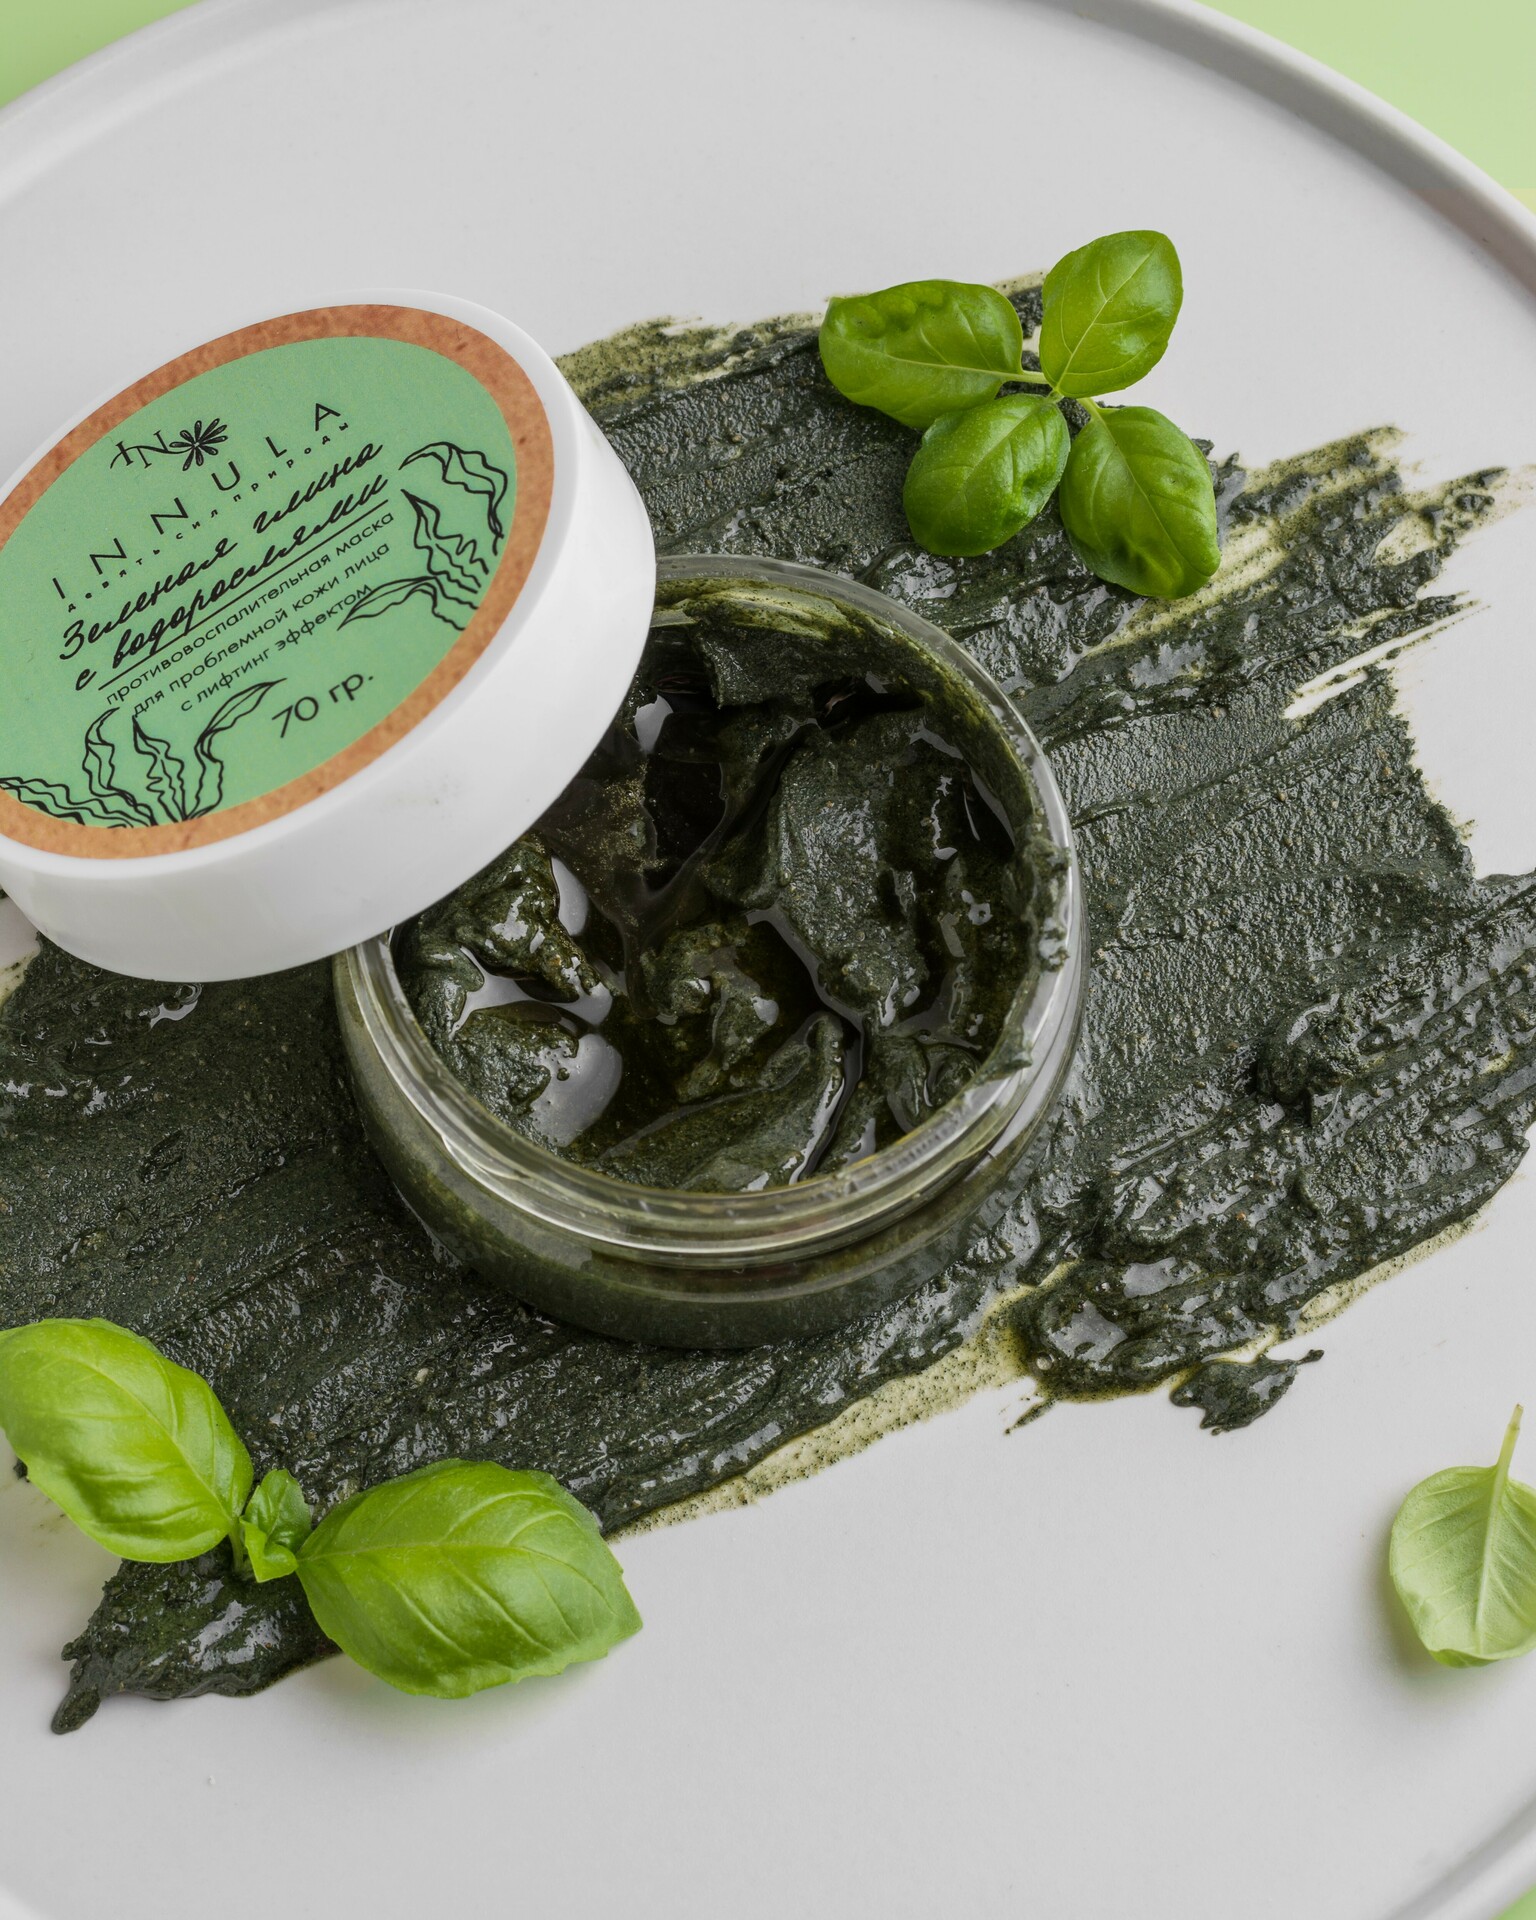 Маска для лица "Зеленая глина с водорослями" (против высыпаний), цена 420  руб. натуральная косметика